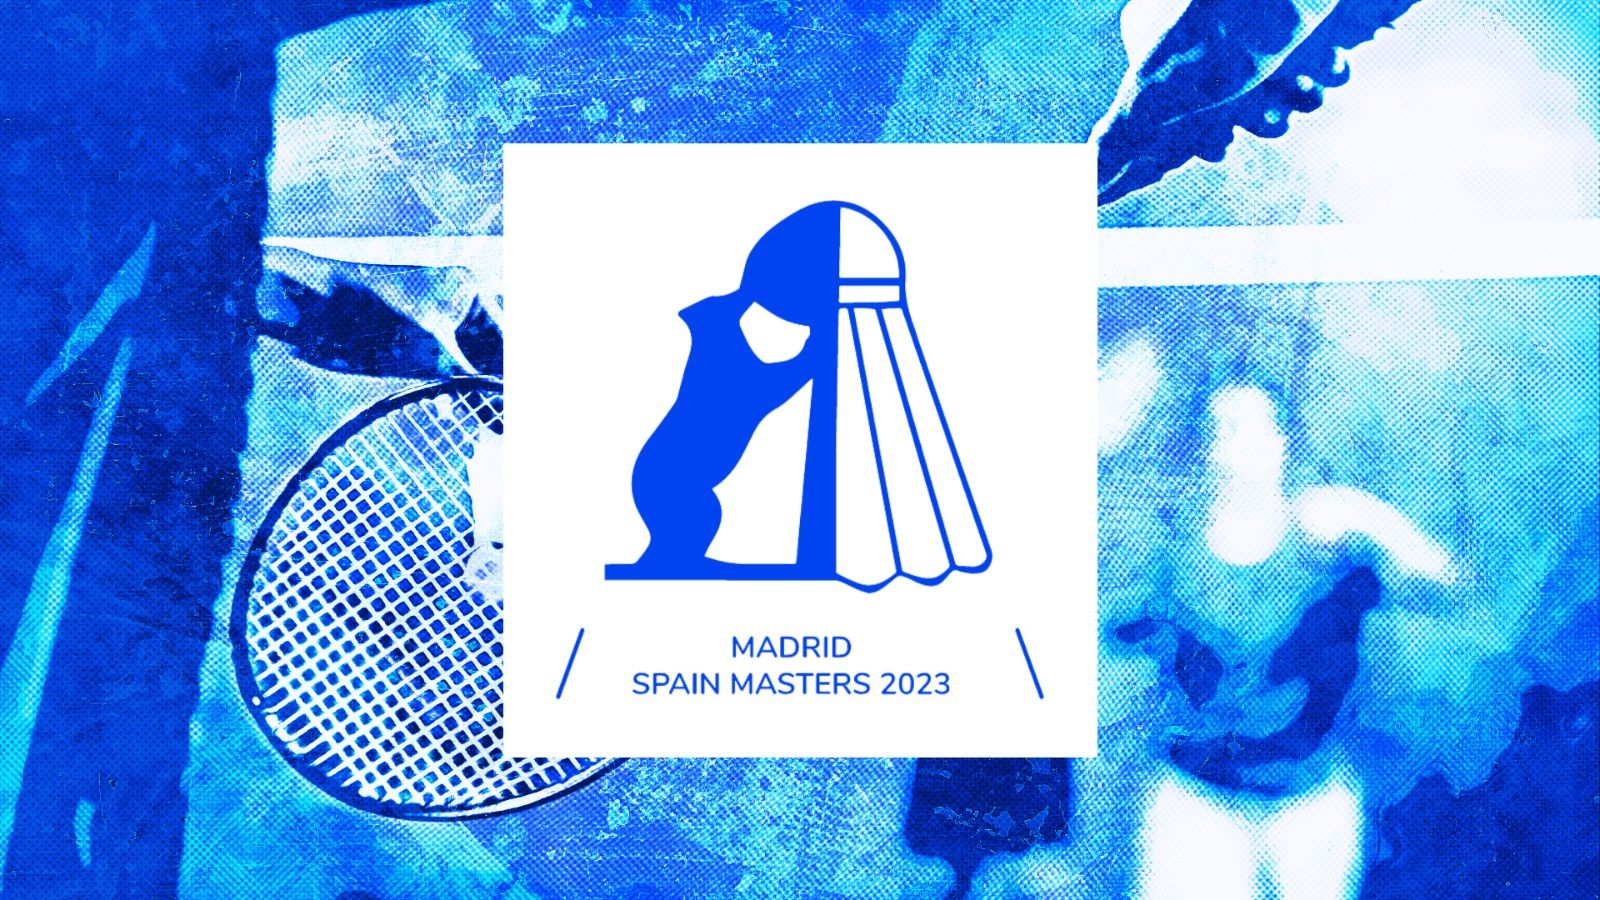 Spain Masters 2023: 4 Ganda Campuran Indonesia Tembus 16 Besar